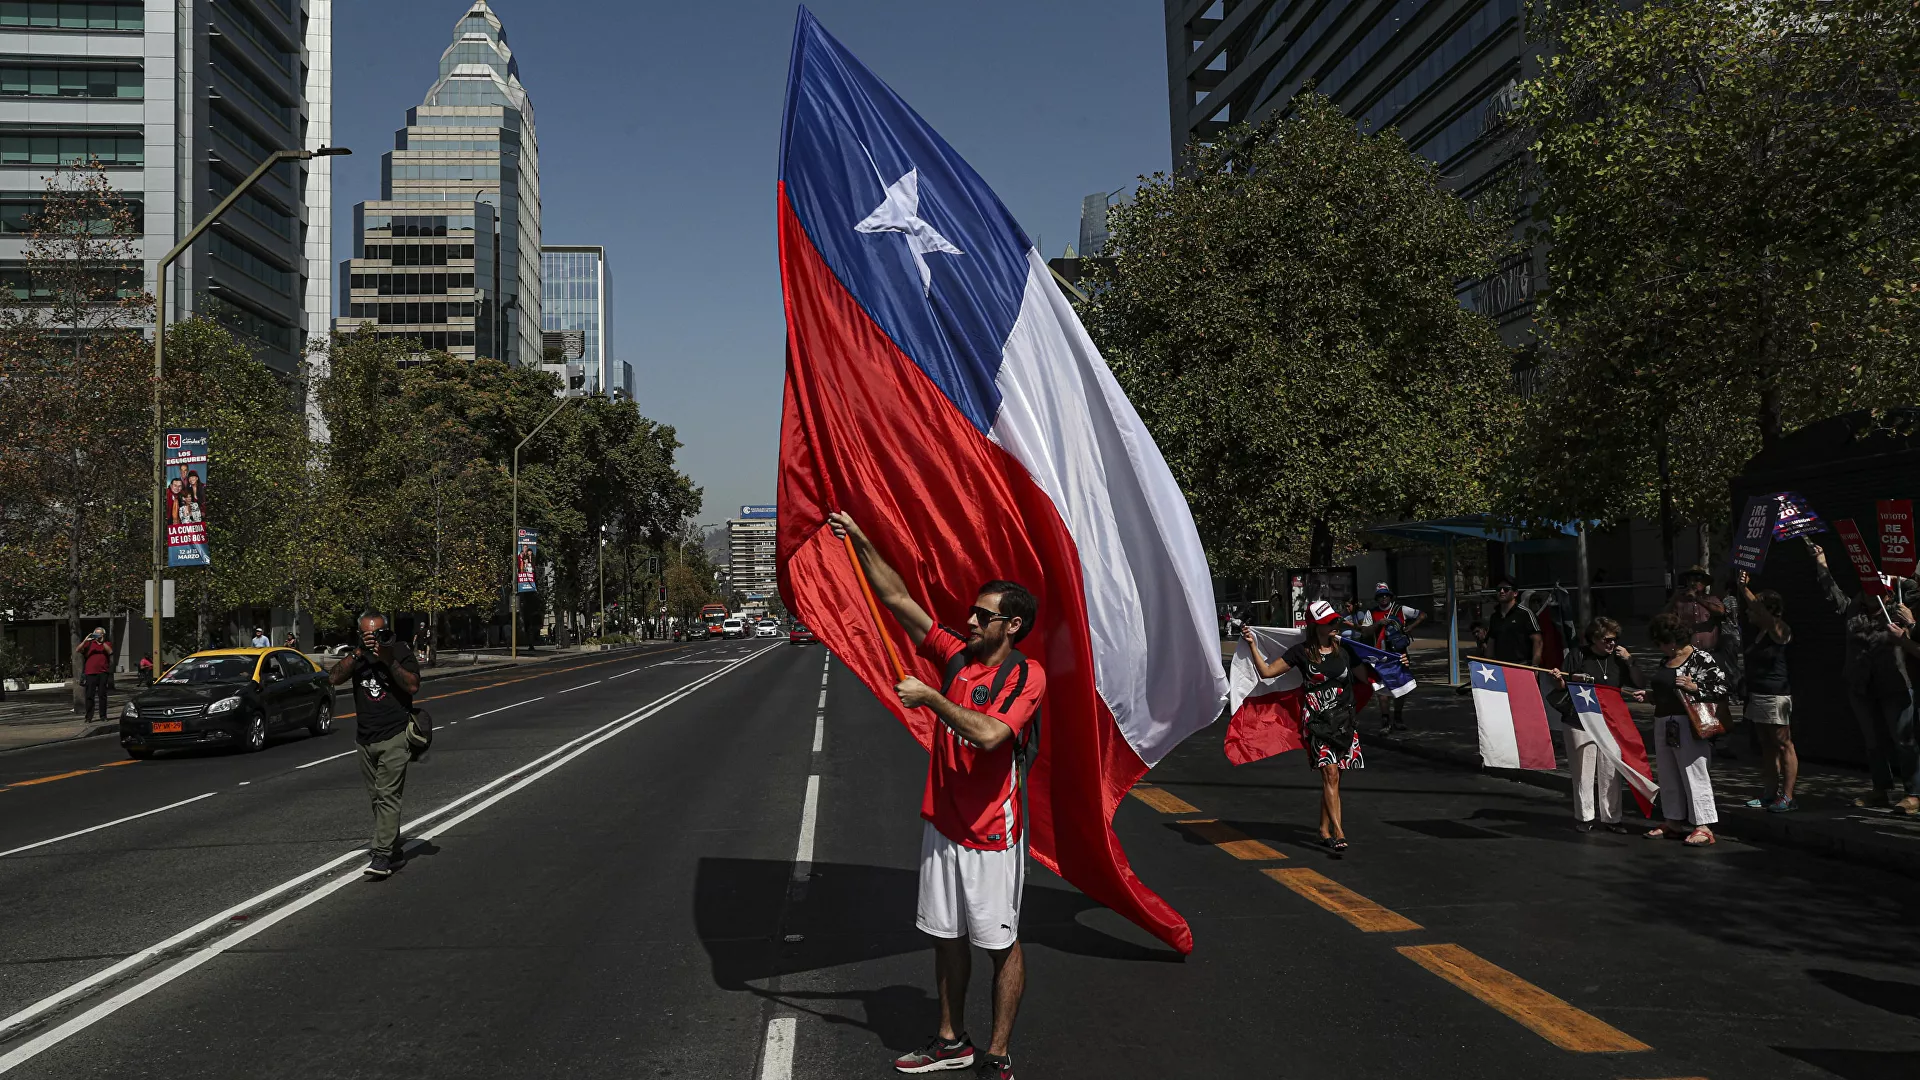  La asamblea constituyente de Chile acepta a trámite las primeras 14 normas